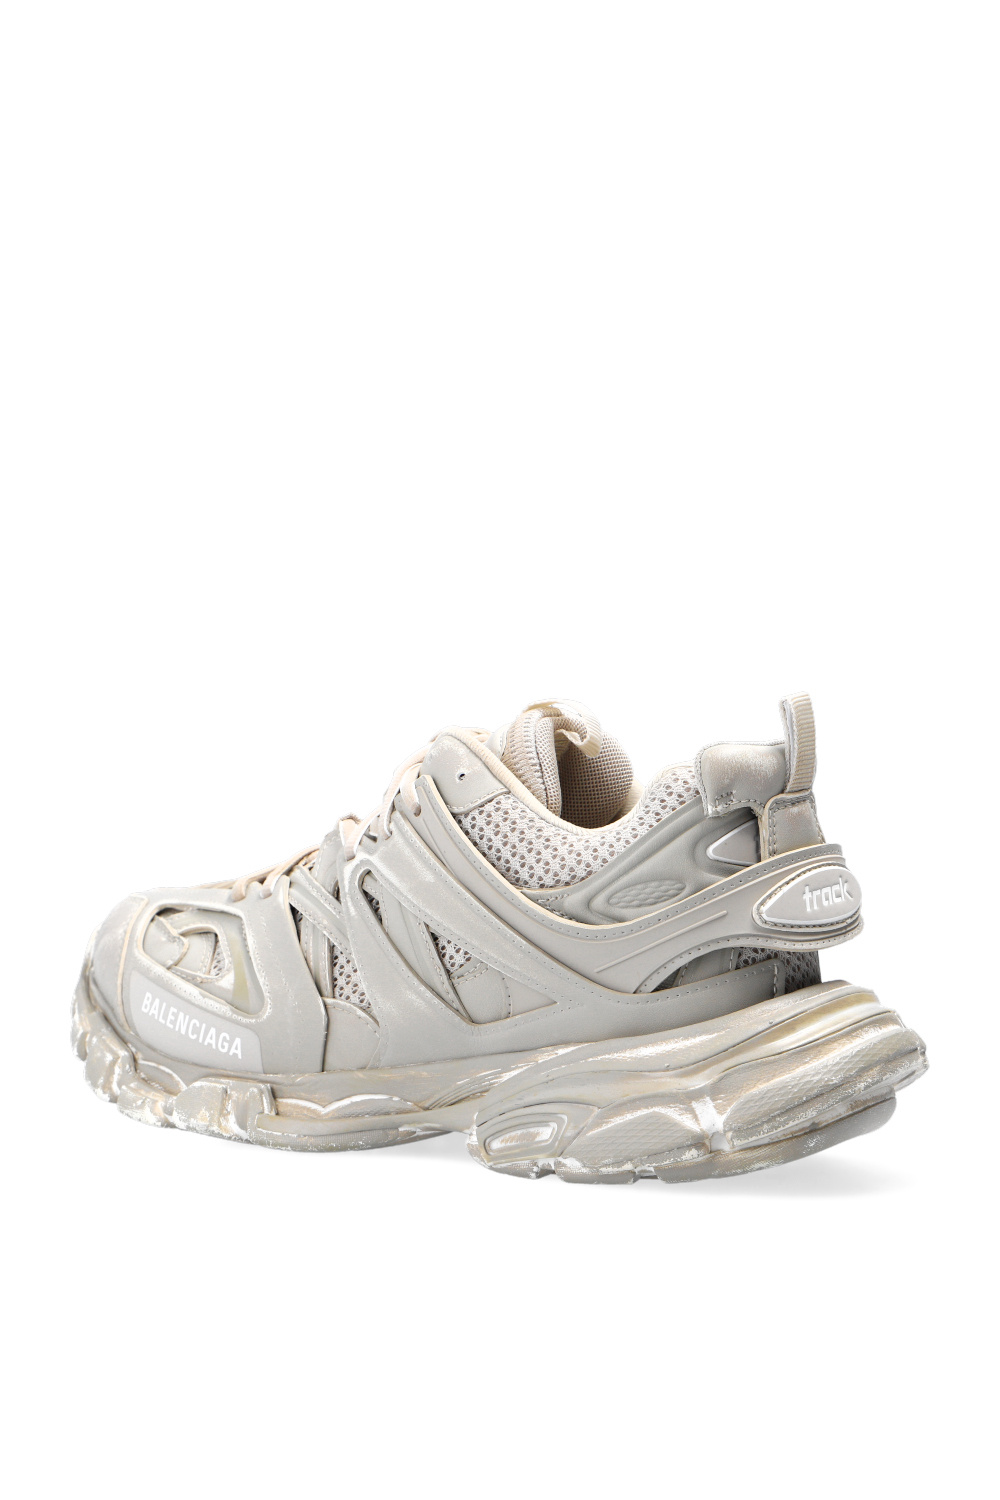 Balenciaga ‘Track’ light sneakers